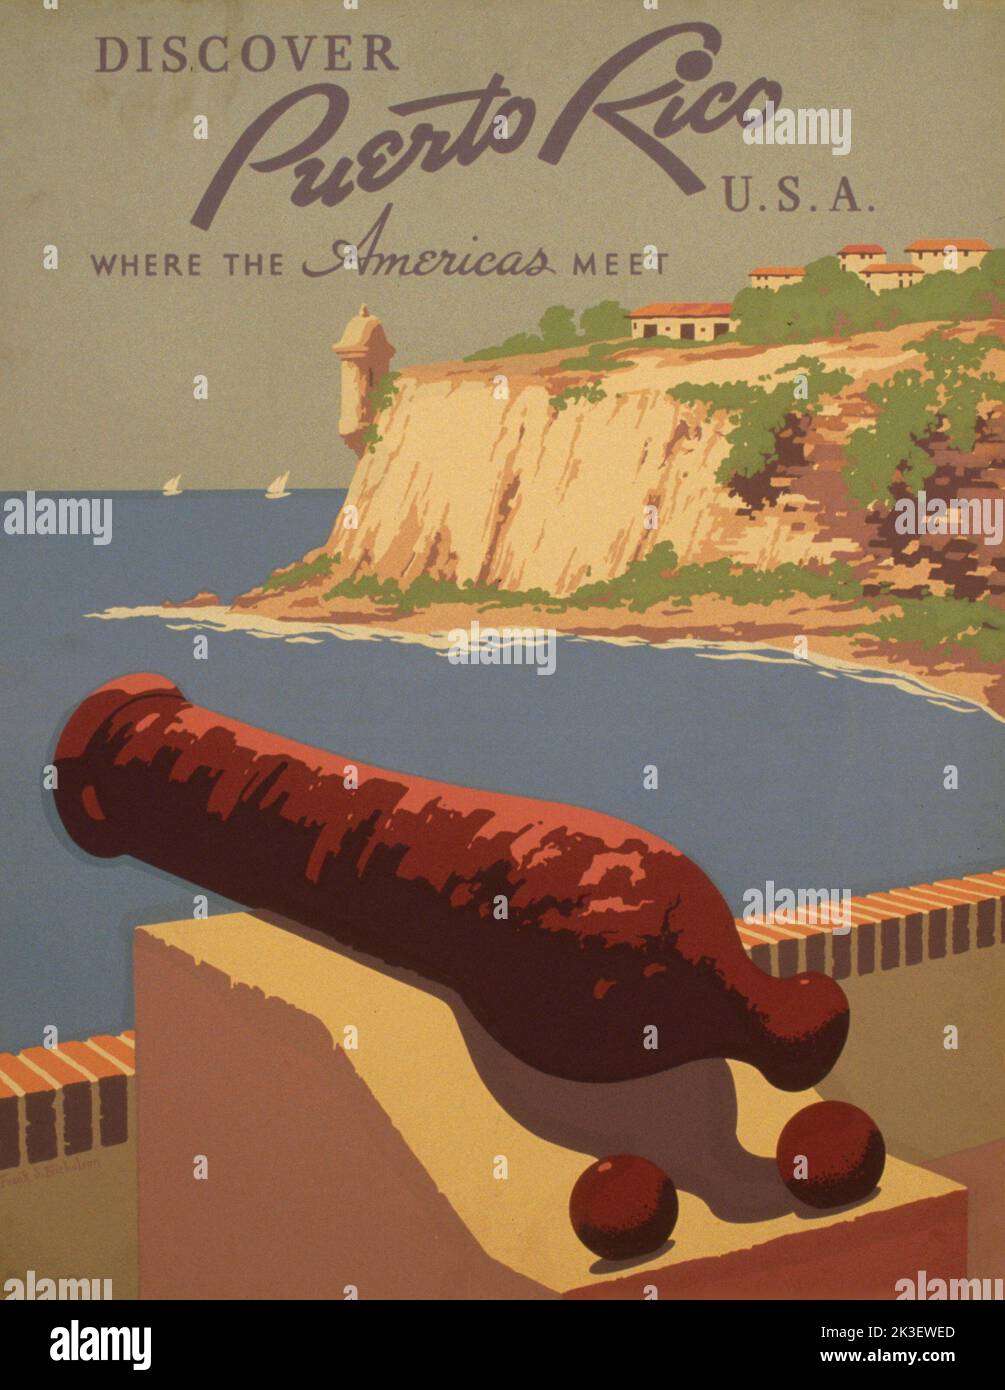 Découvrez Porto Rico États-Unis où les Amériques se rencontrent, affiche de voyage vintage de Frank S. Nicholson. CA.1930-1940 Banque D'Images